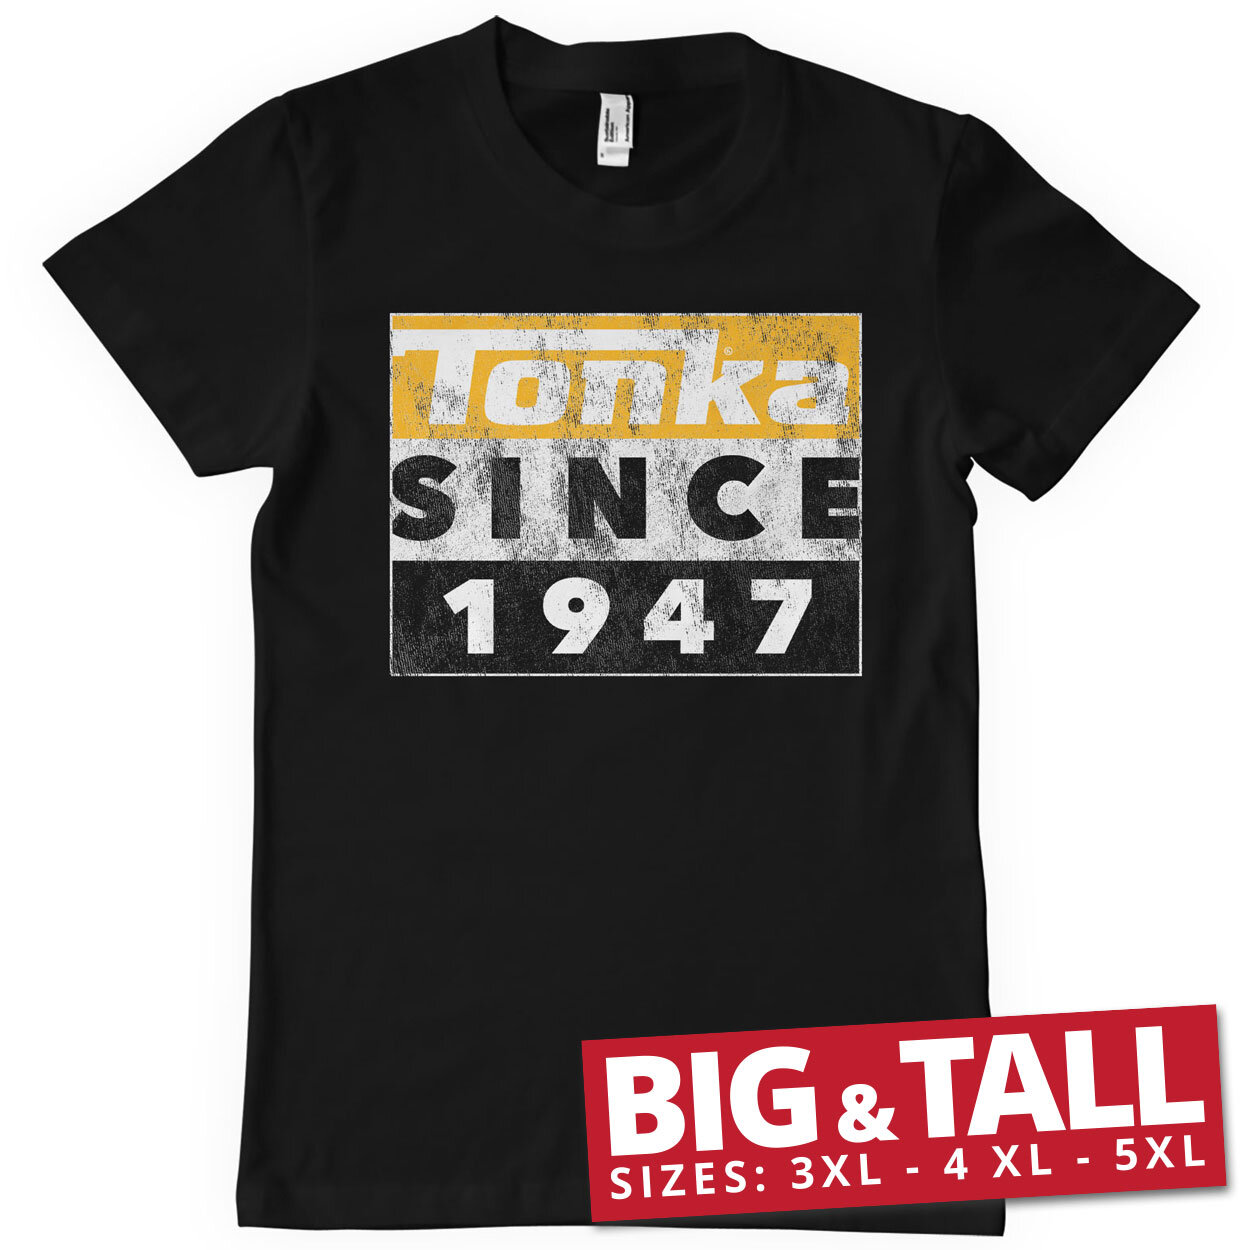 Tonka Since 1947 Big & Tall T-Shirt